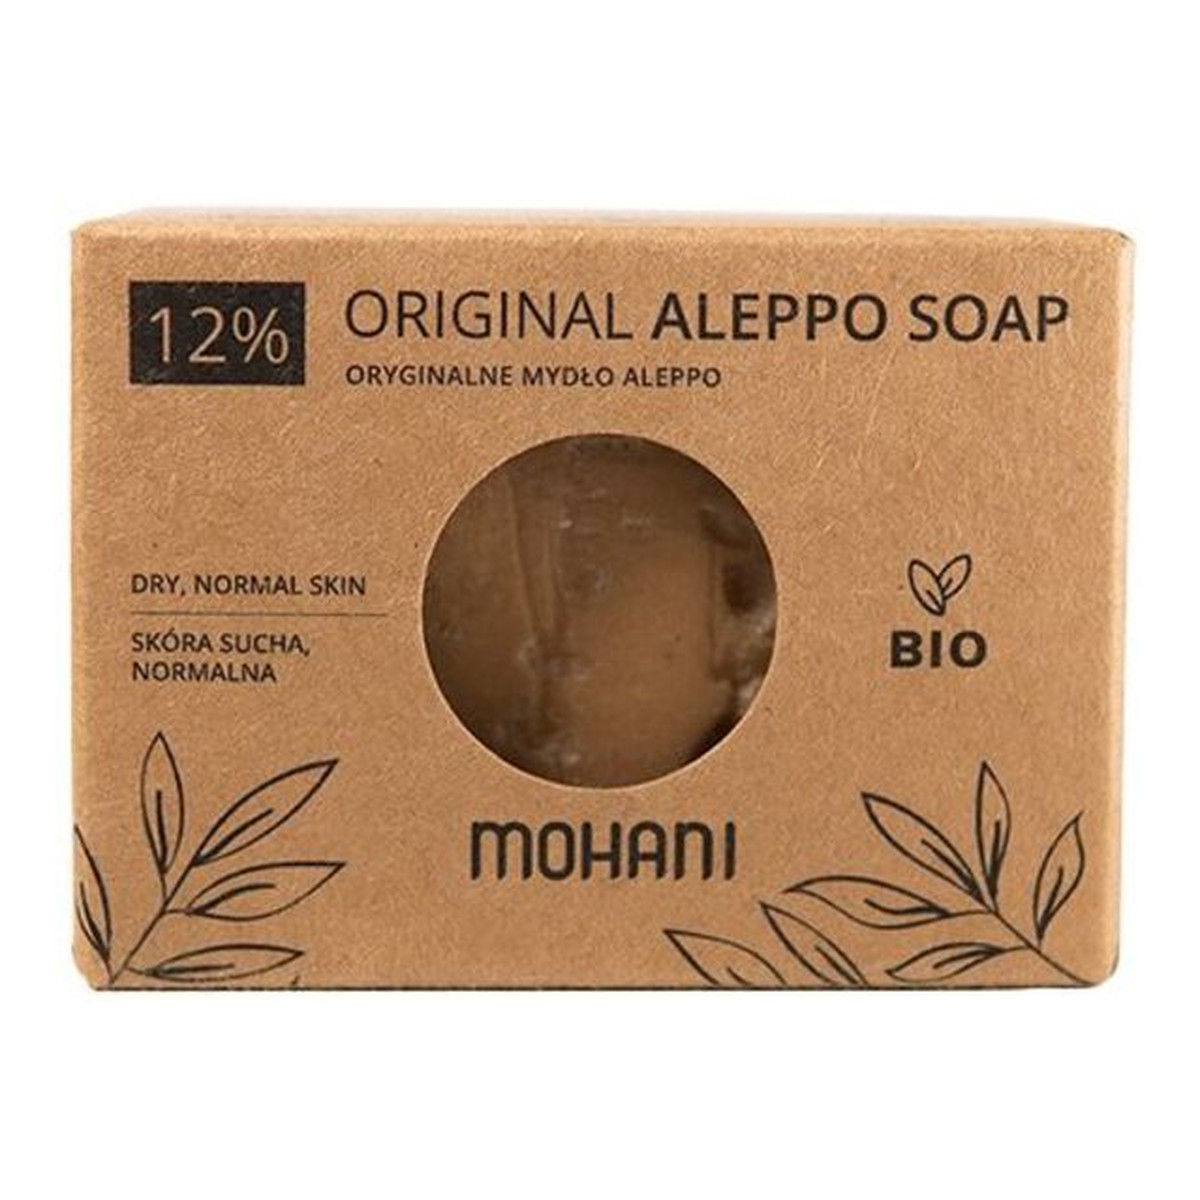 Mohani Aleppo BIO Mydło oliwkowo-laurowe12% 185g